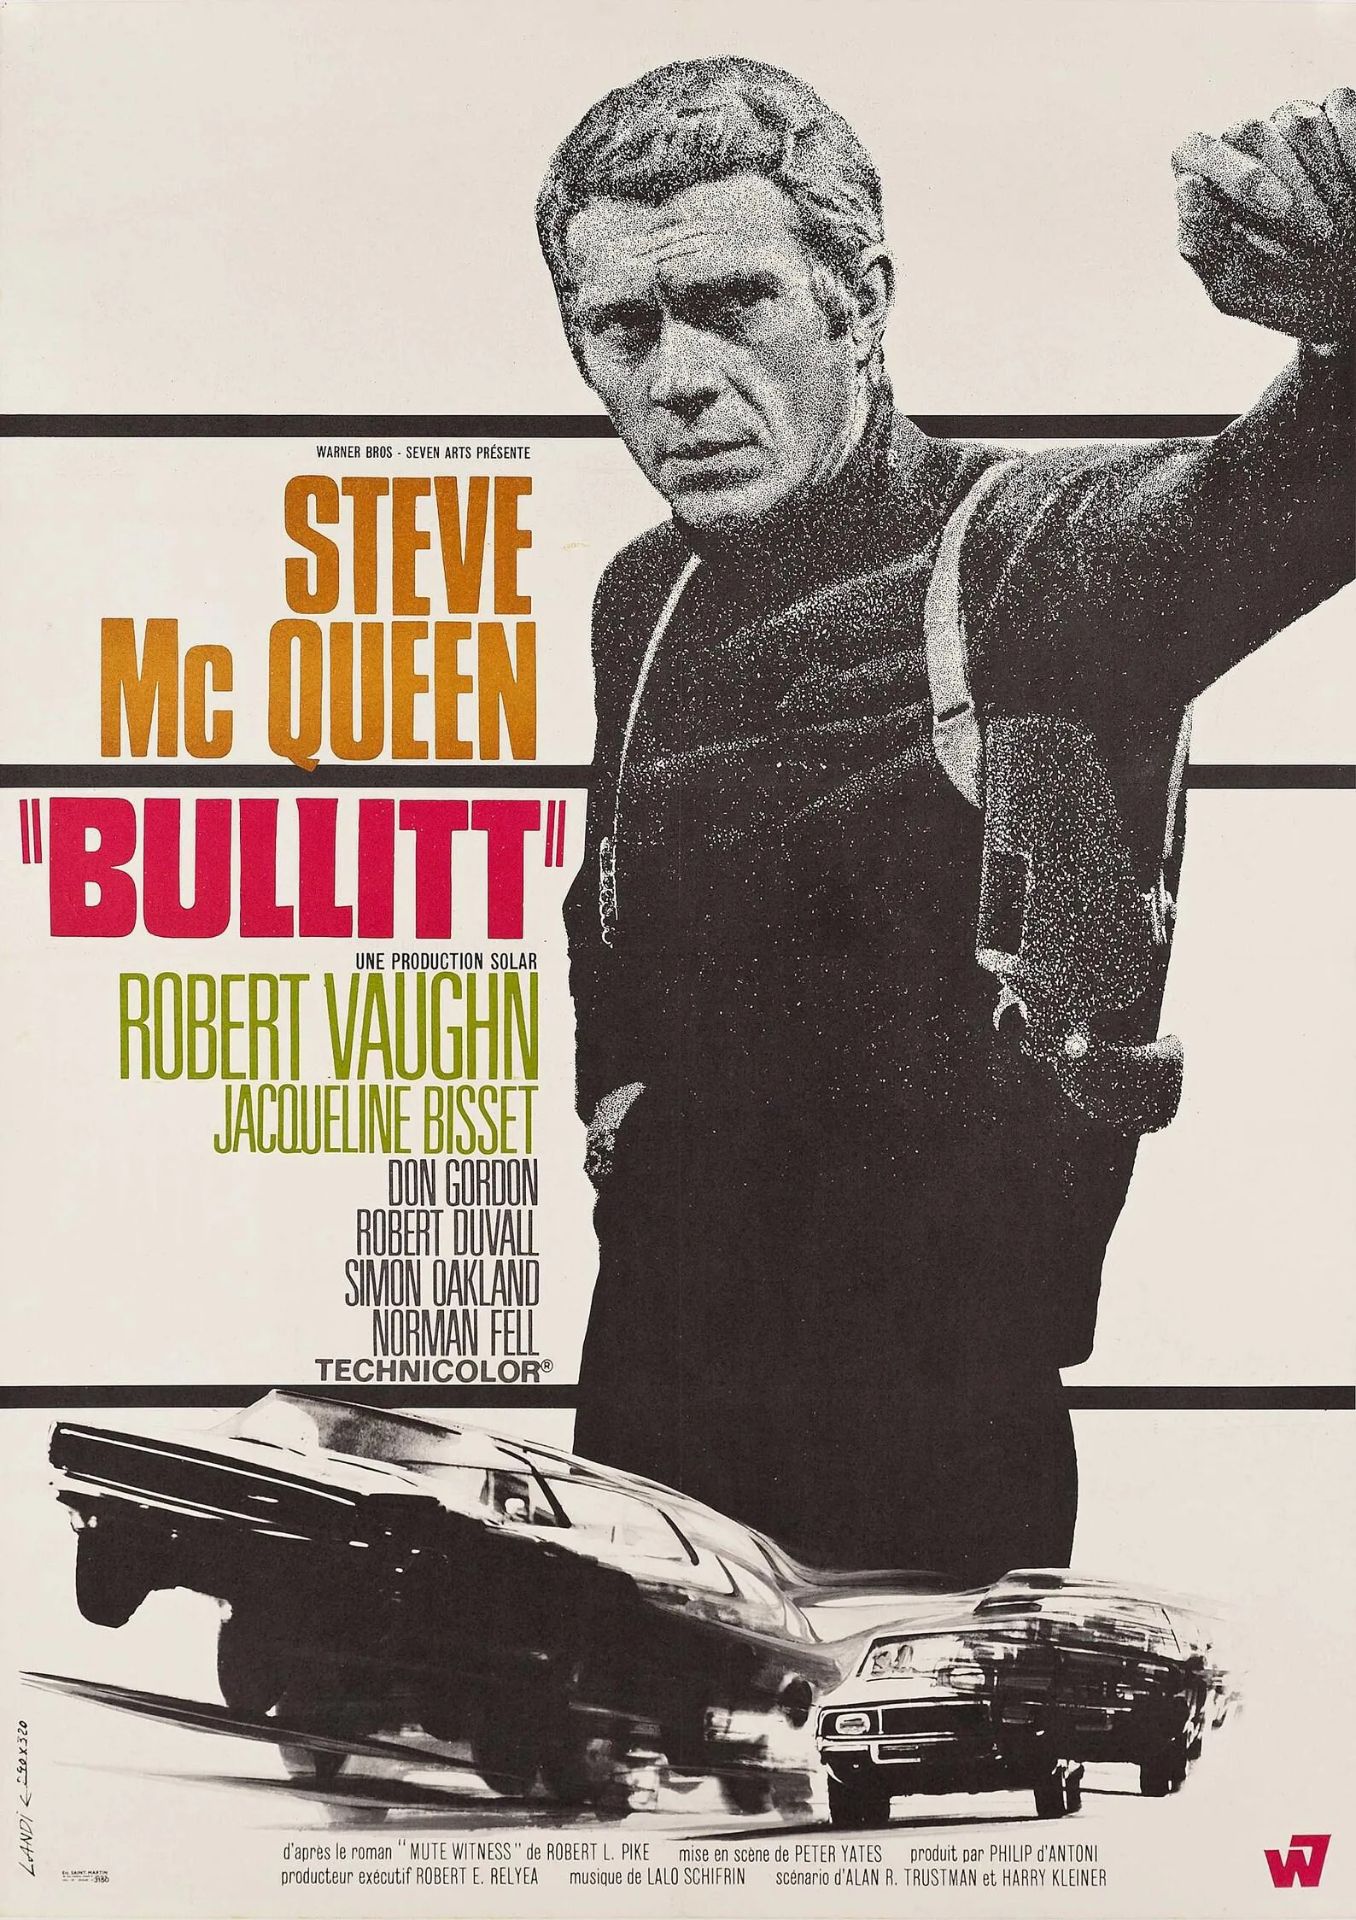 Steve McQueen "Bullitt" Print